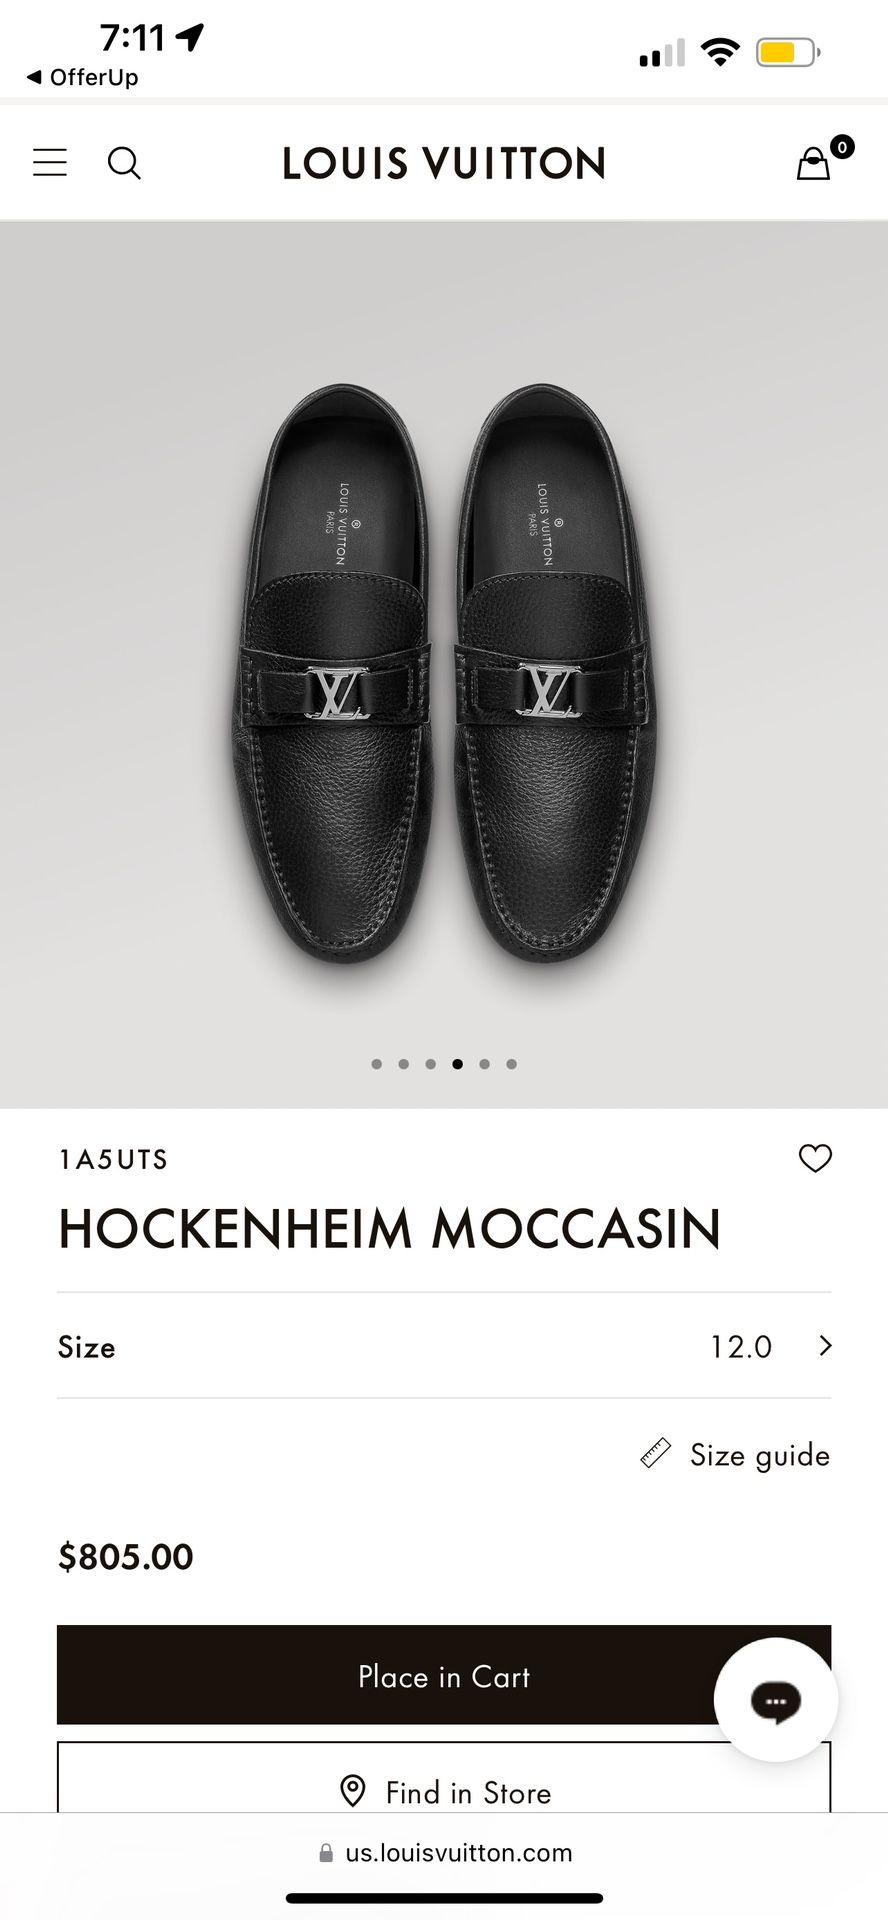 Louis Vuitton Hockenheim Moccasin